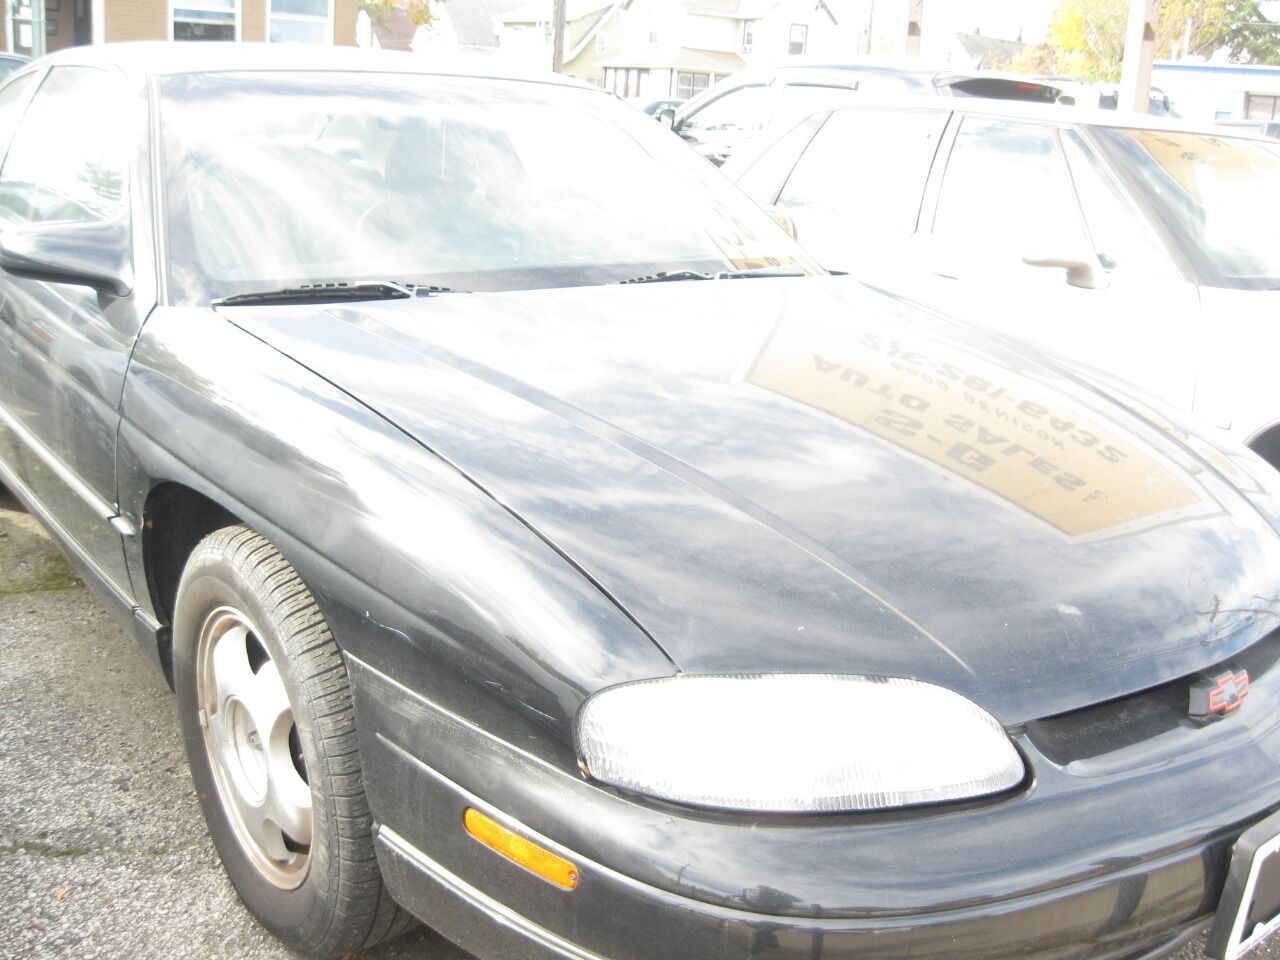 1999 Chevrolet Monte Carlo For Sale - Carsforsale.com®